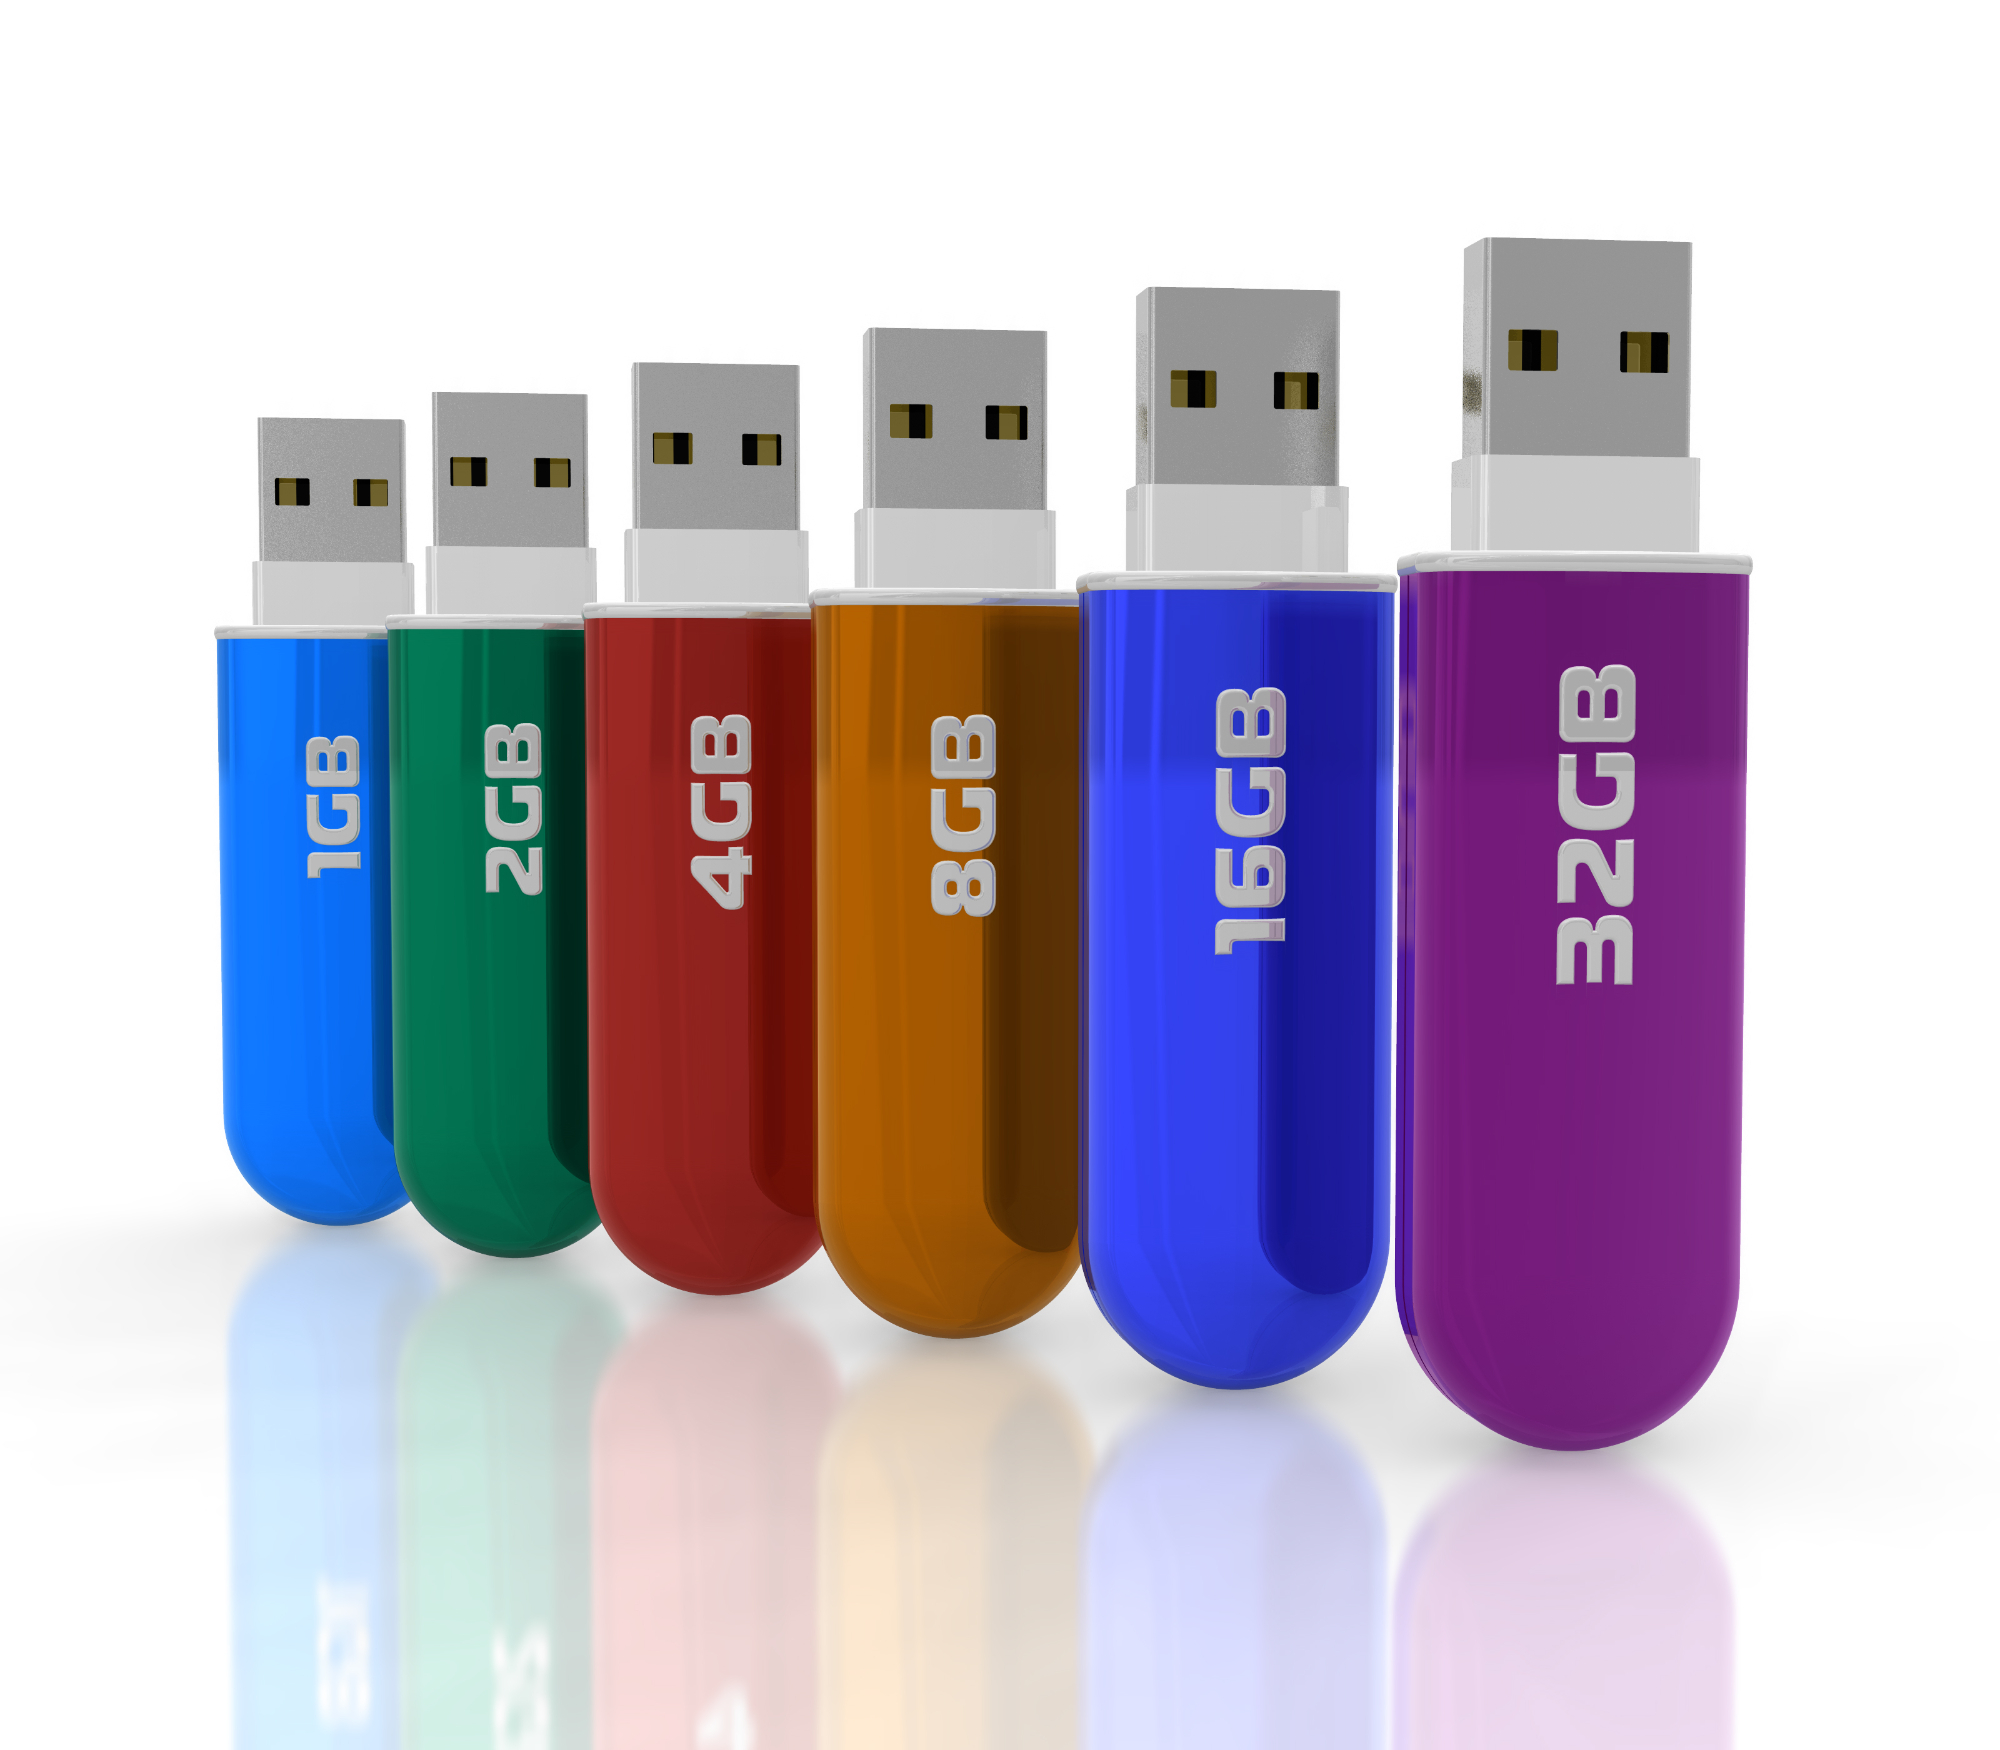 USB ključek lahko shranjuje vse pomembne podatke in datoteke